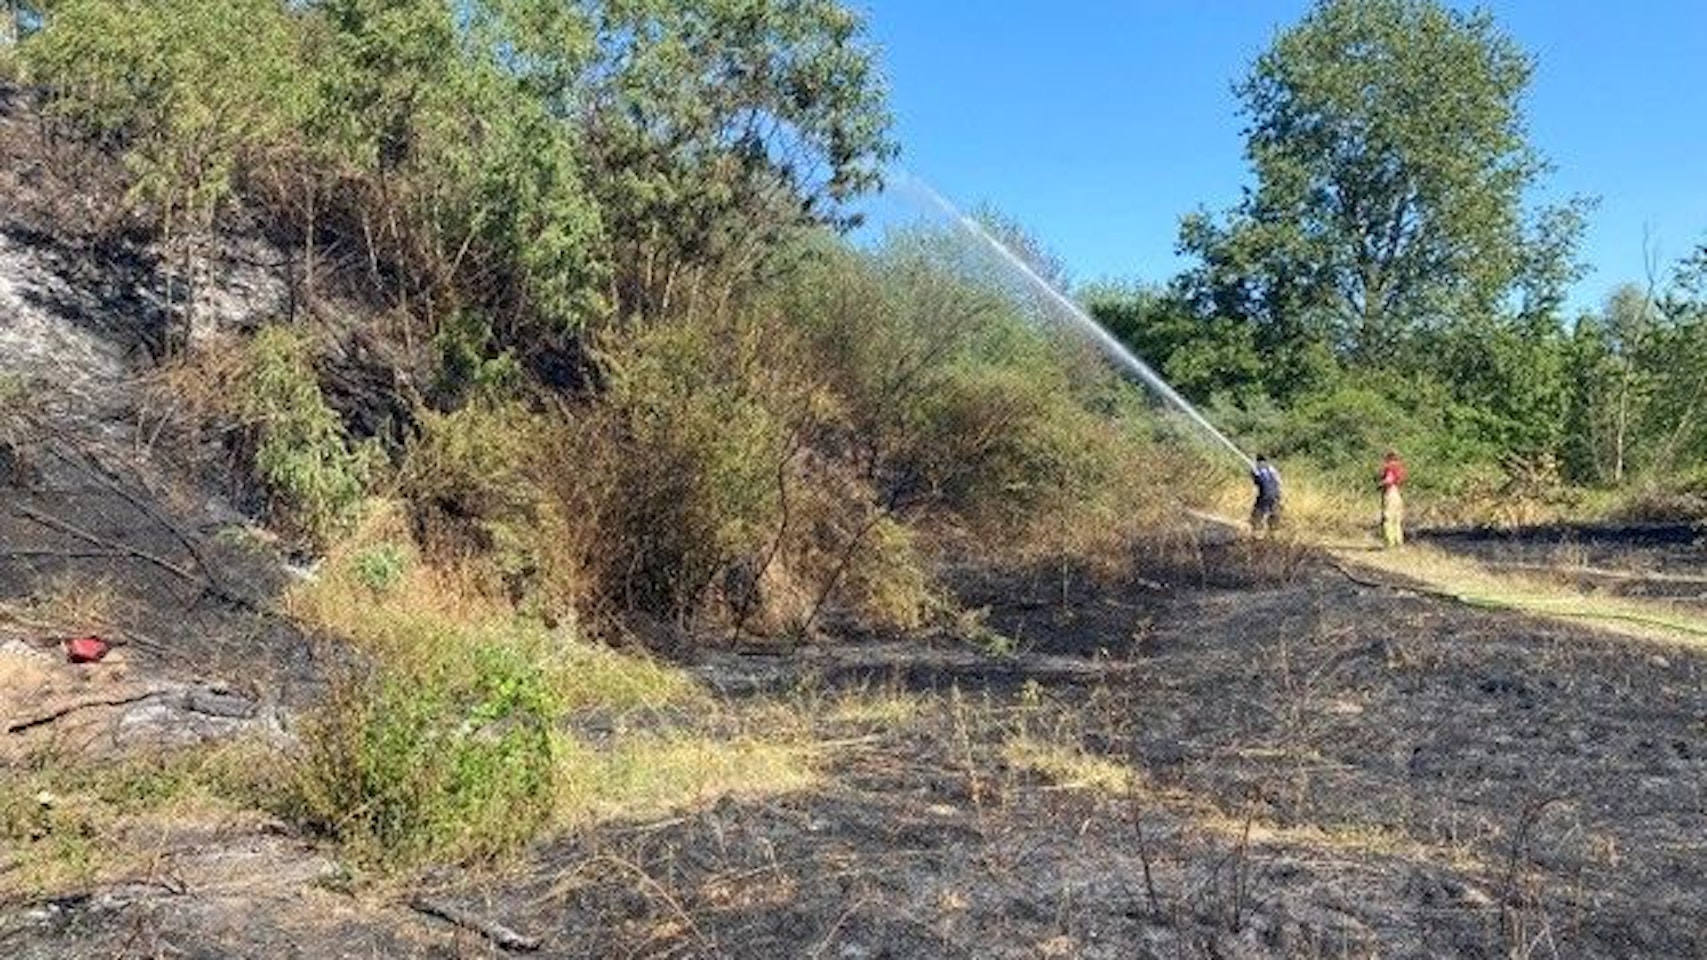 Feuerwehrleute löschen und bewässern Vegetation nach dem Brand auf dem Feldstück in Weidenpesch.